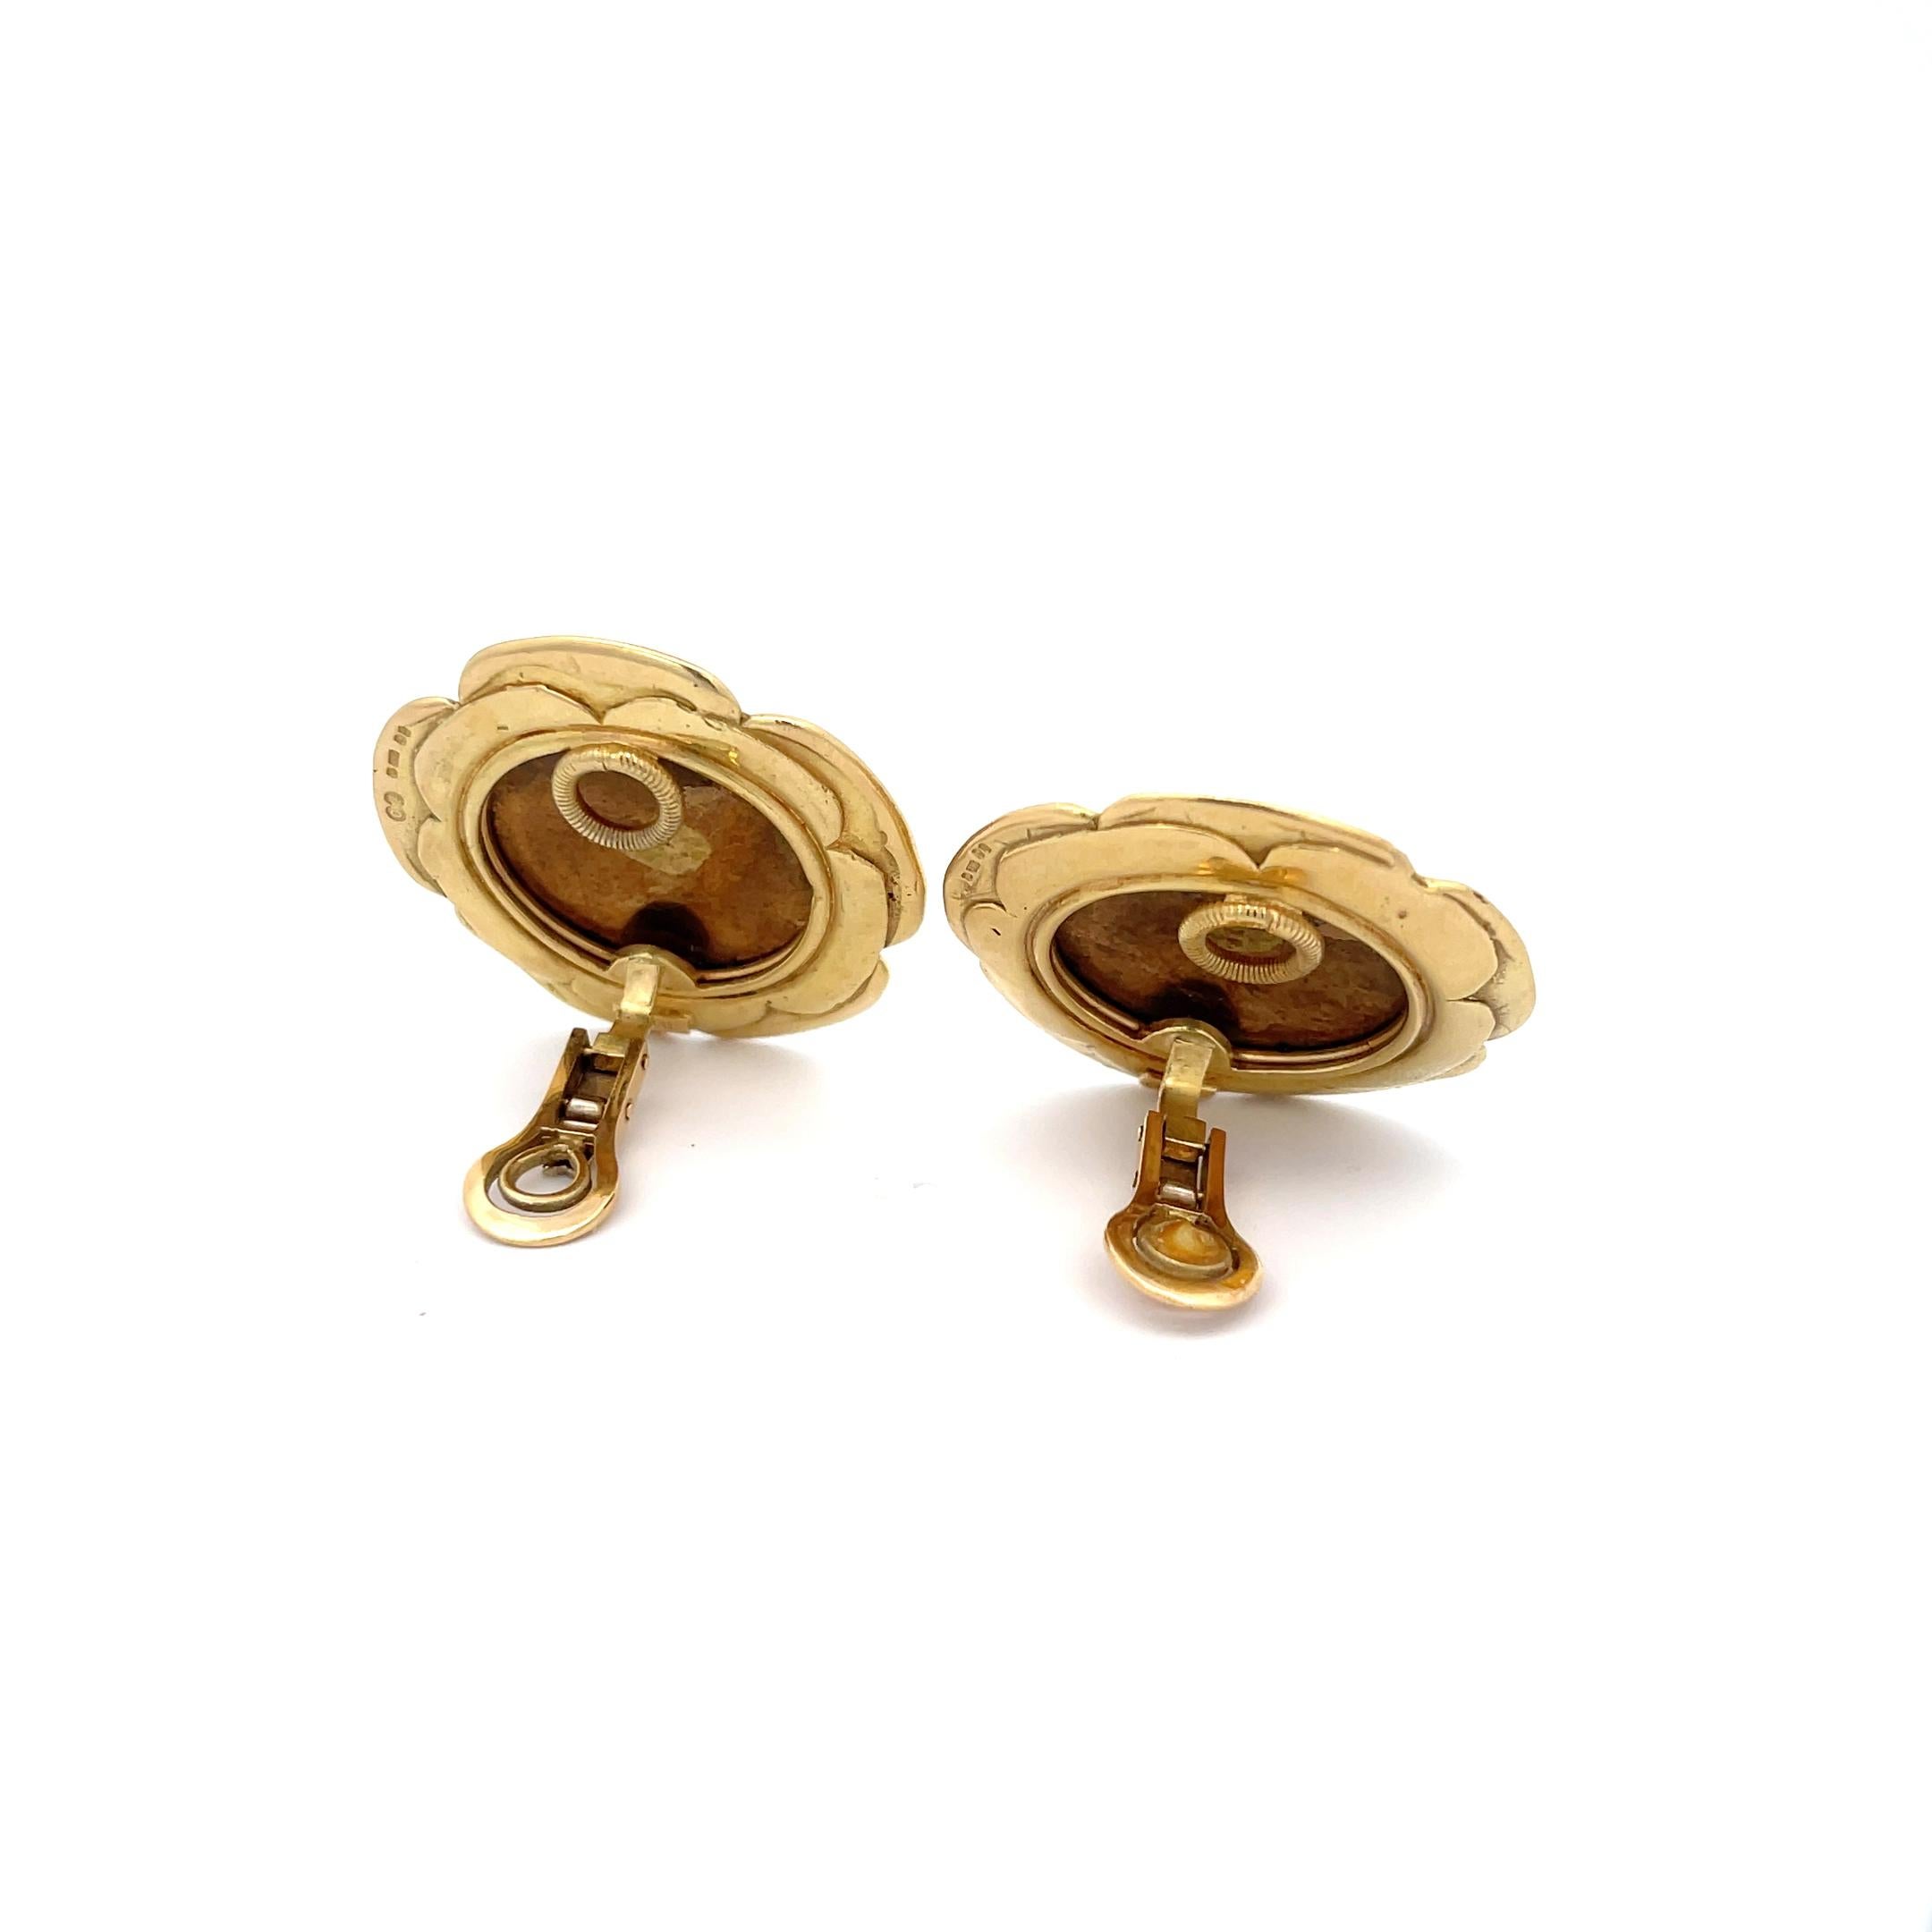 Elizabeth Gage Enamel Clip-On Earrings in 18K Yellow Gold. The earrings feature a flower motif done in enamel. 
Diameter 1 3/8